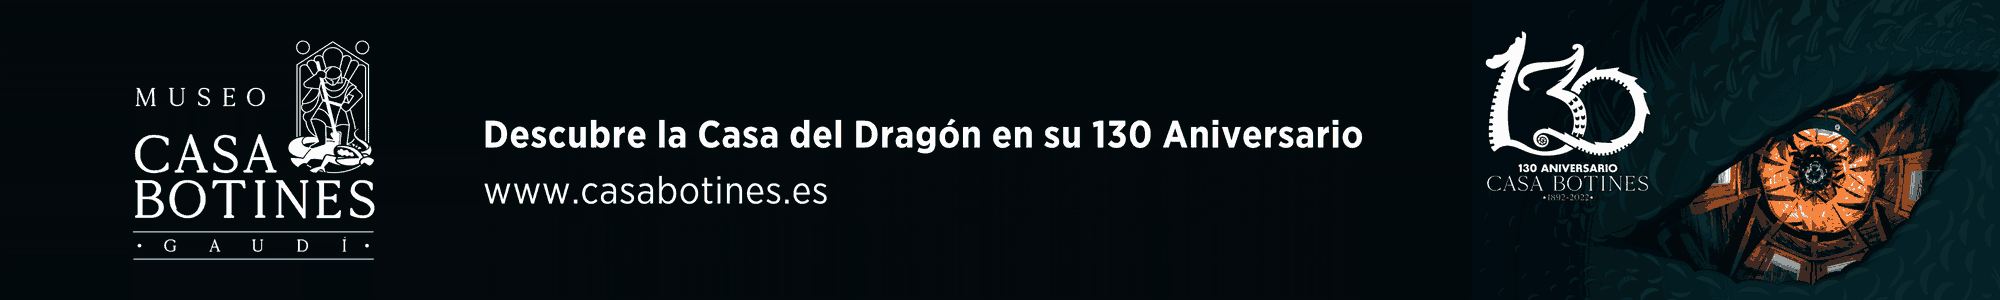 Casa Botines 130 Aniversario - Descubre la casa del Dragón